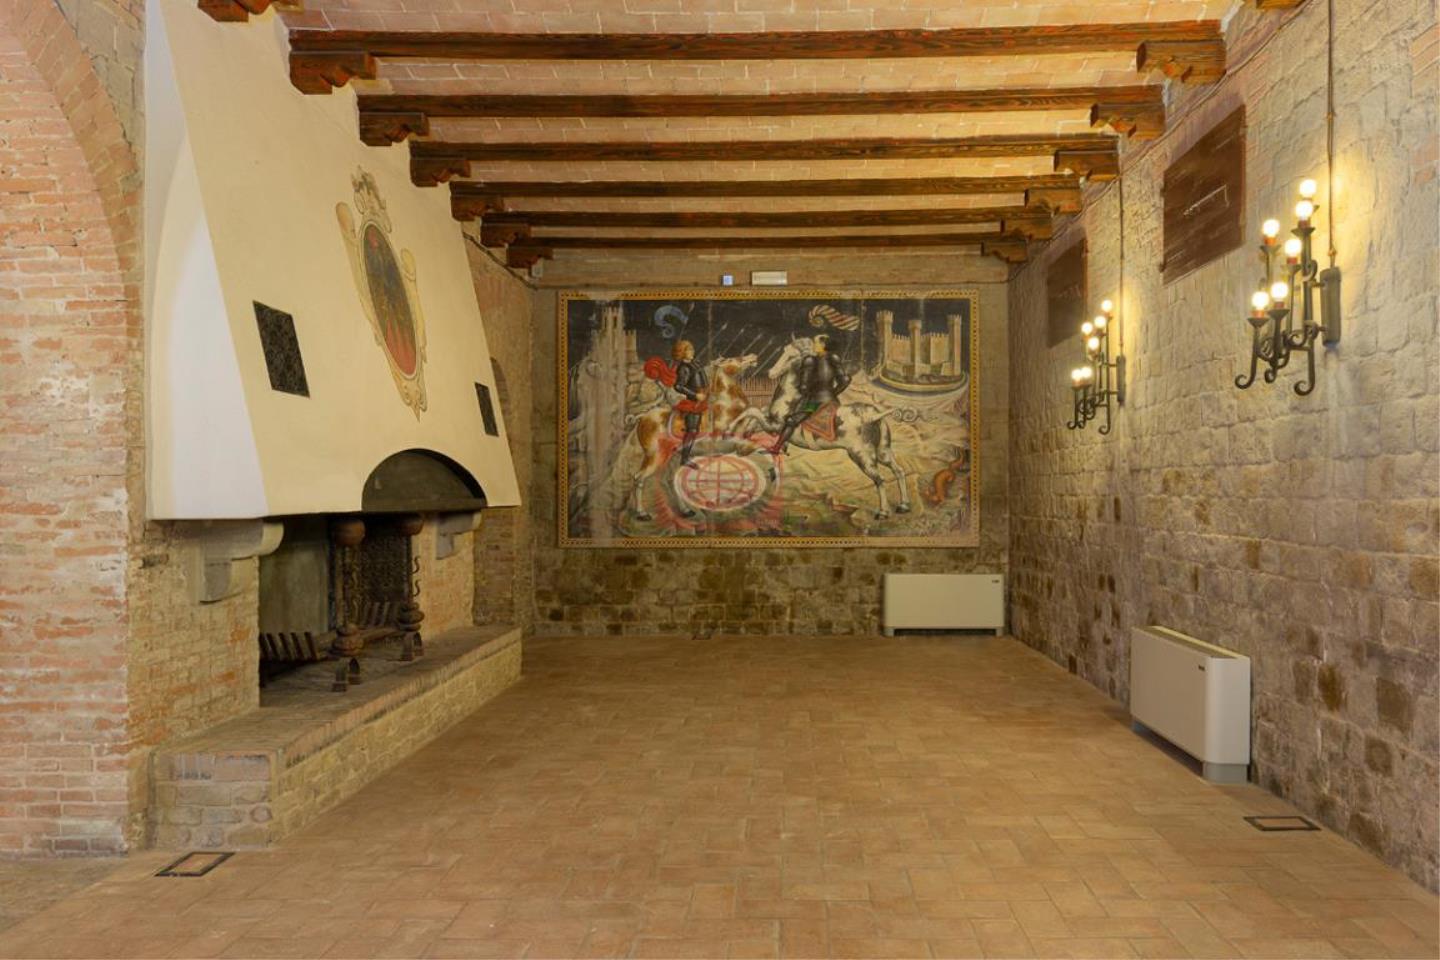 Castello in Vendita Urbino